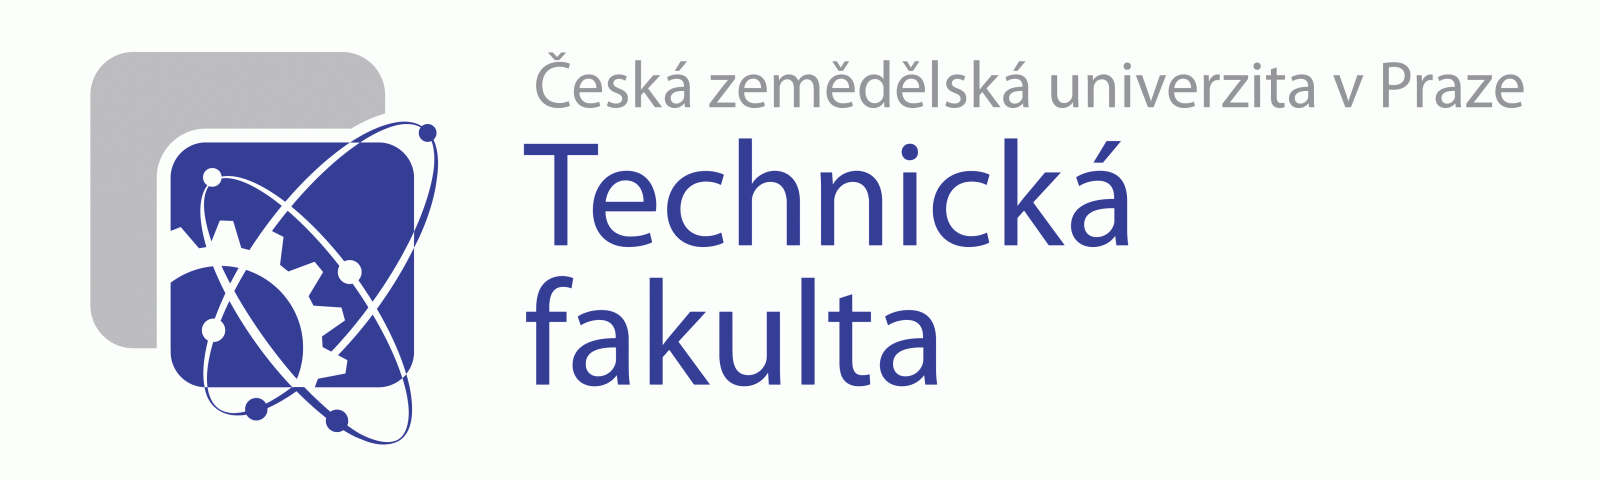 Technická fakulta České zemědělské univerzity